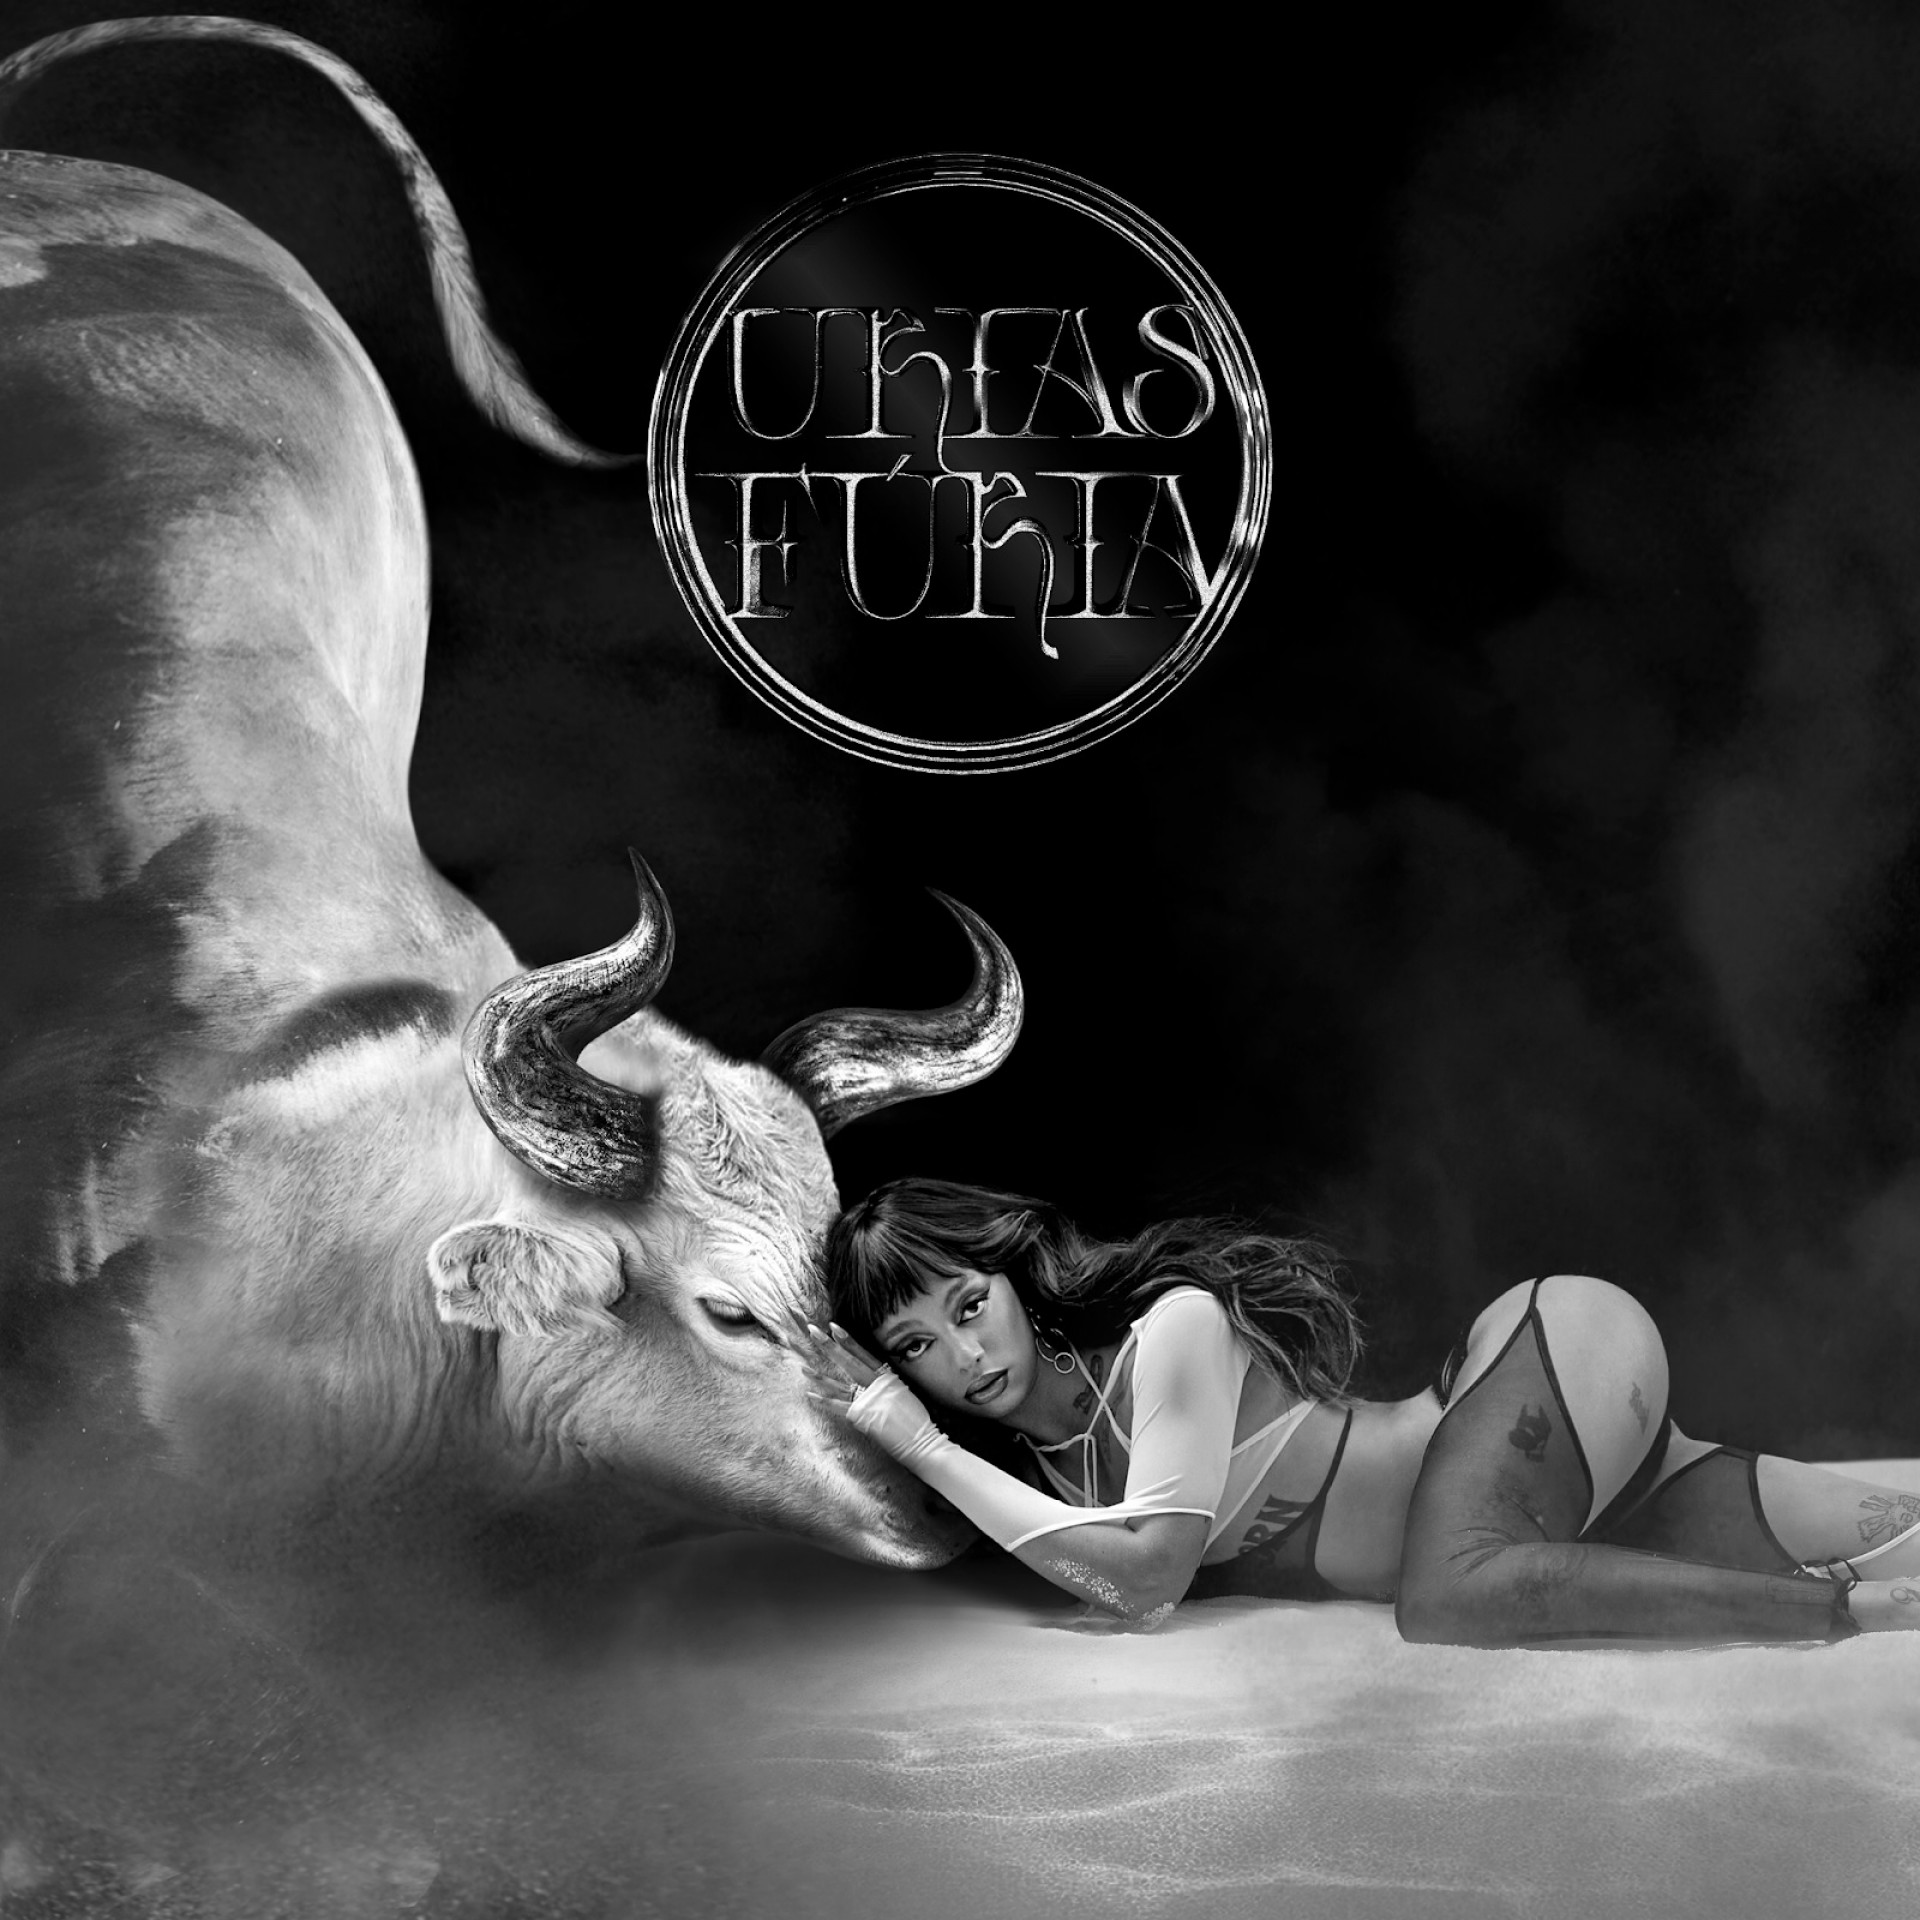 Capa de "Fúria", álbum de estreia da cantora e compositora mineira Urias(Foto: Divulgação)